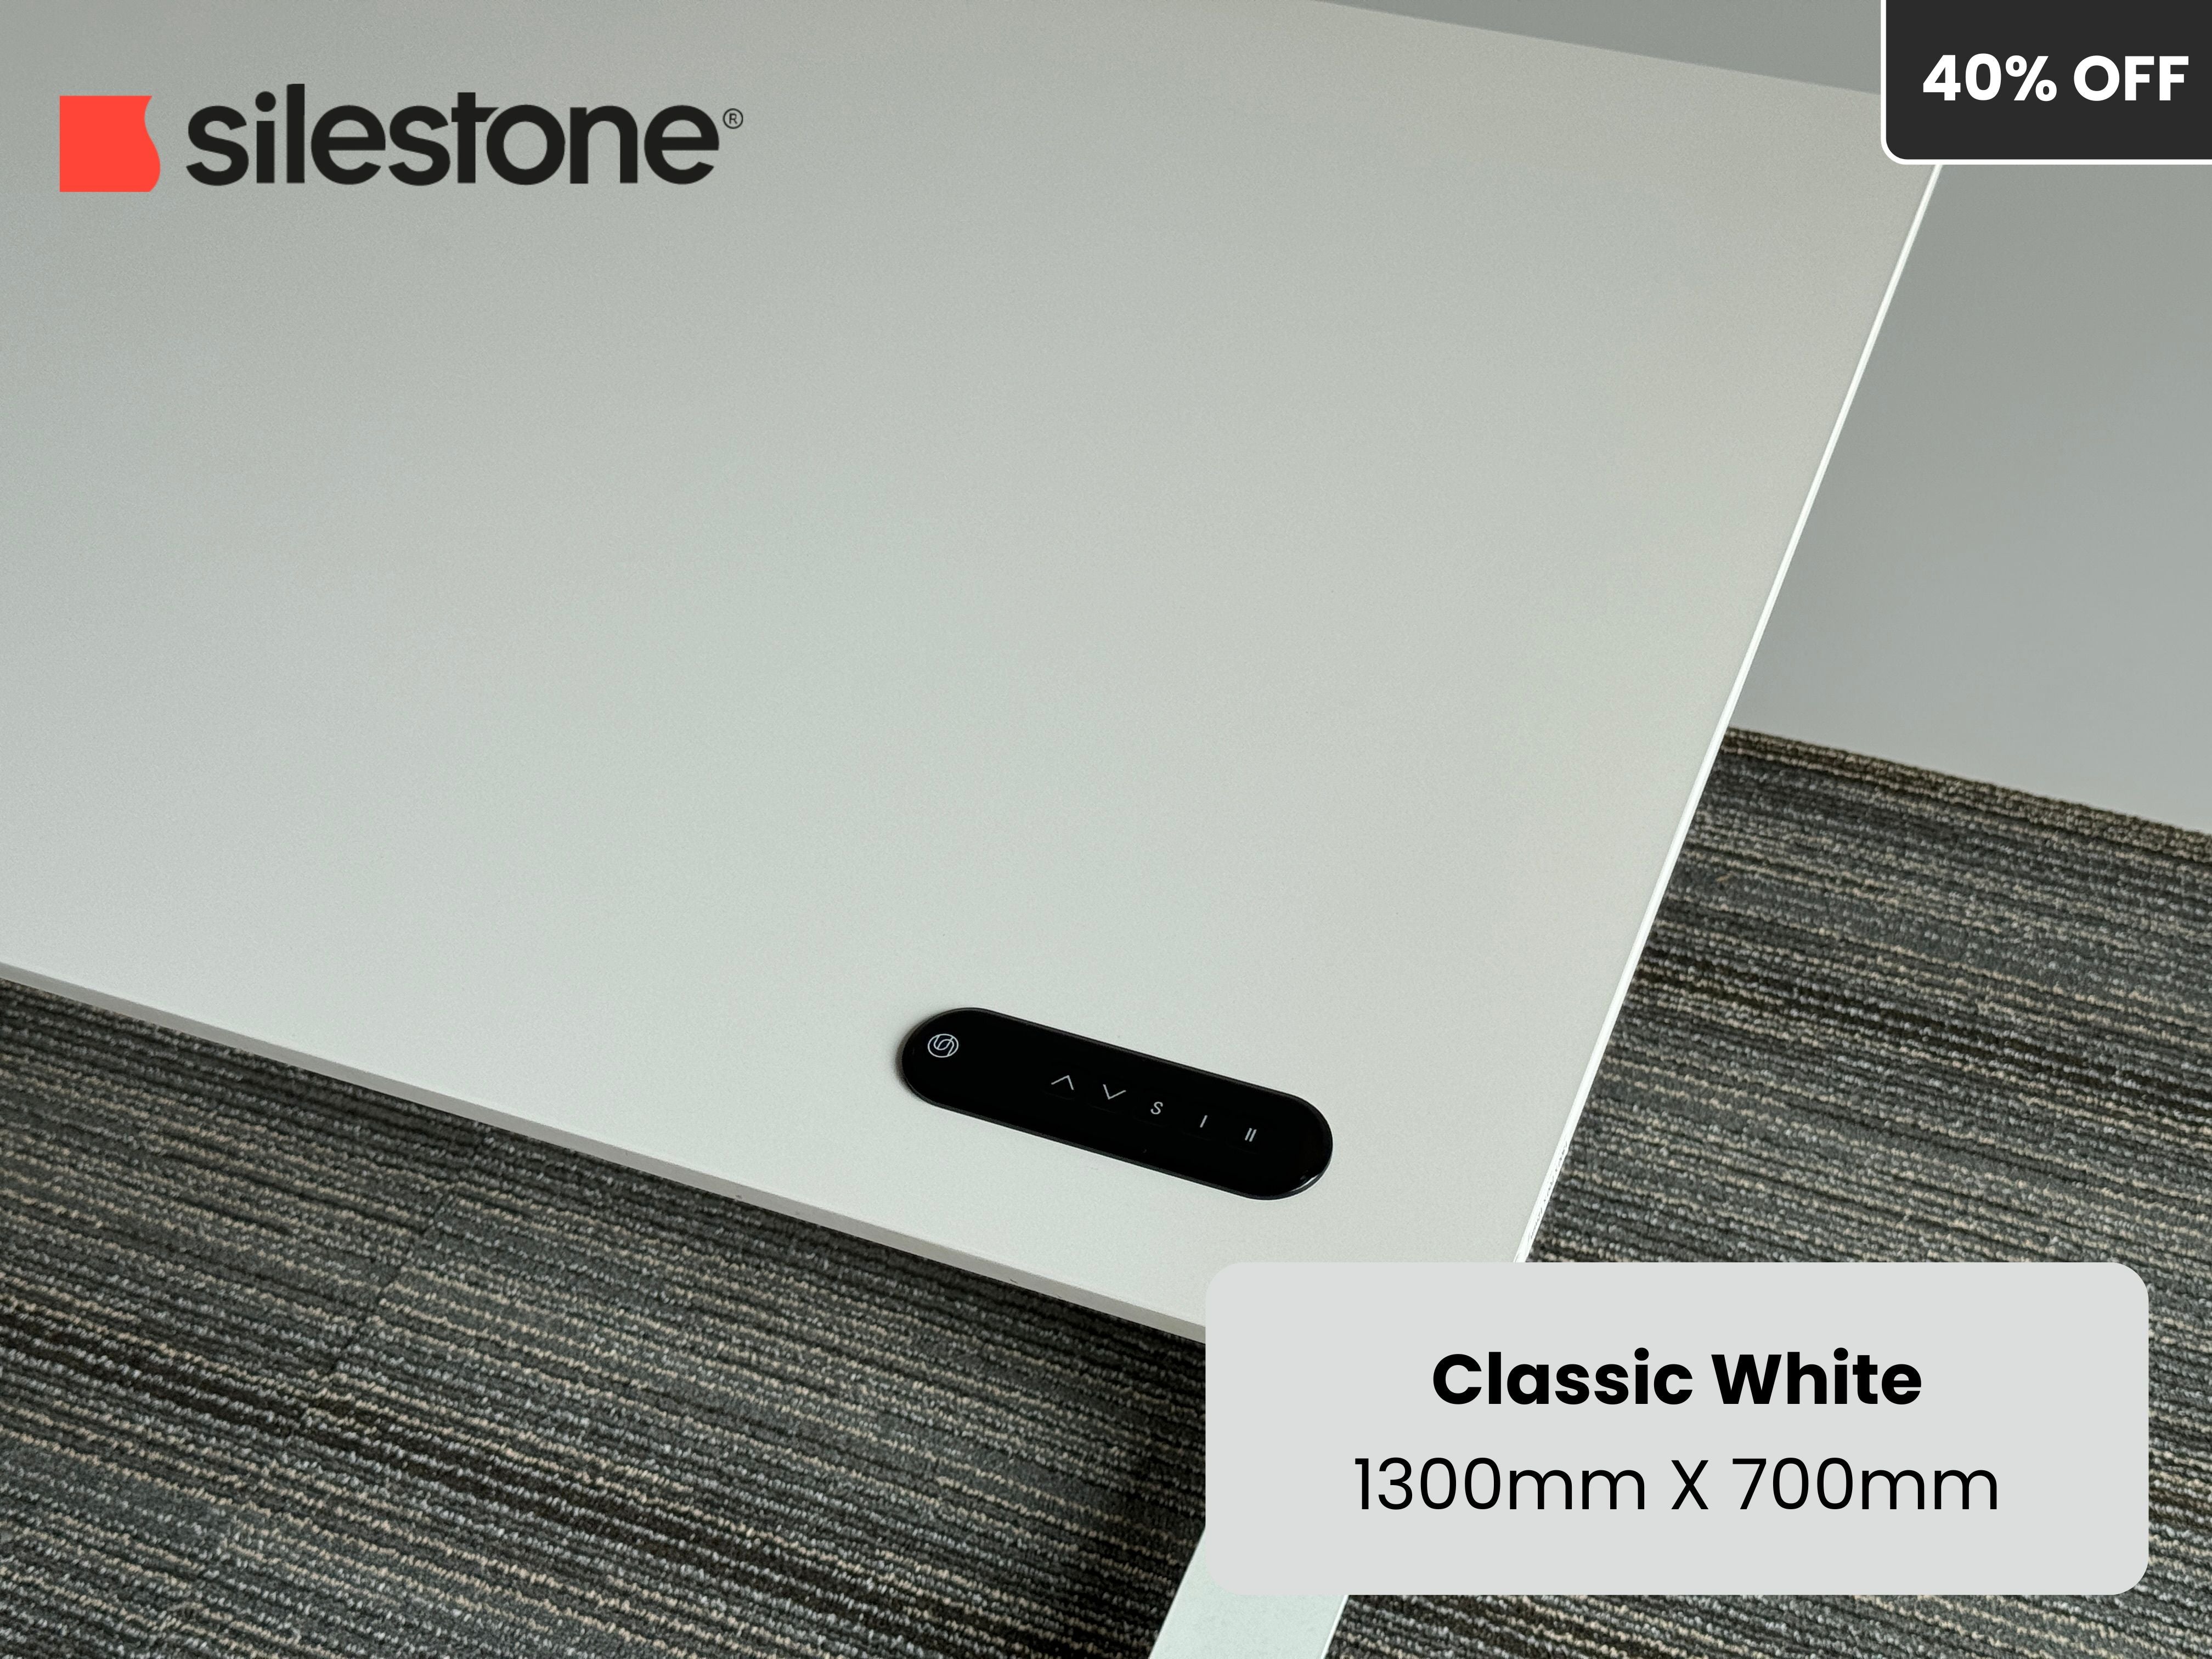 Classic White Silestone Standing Desk